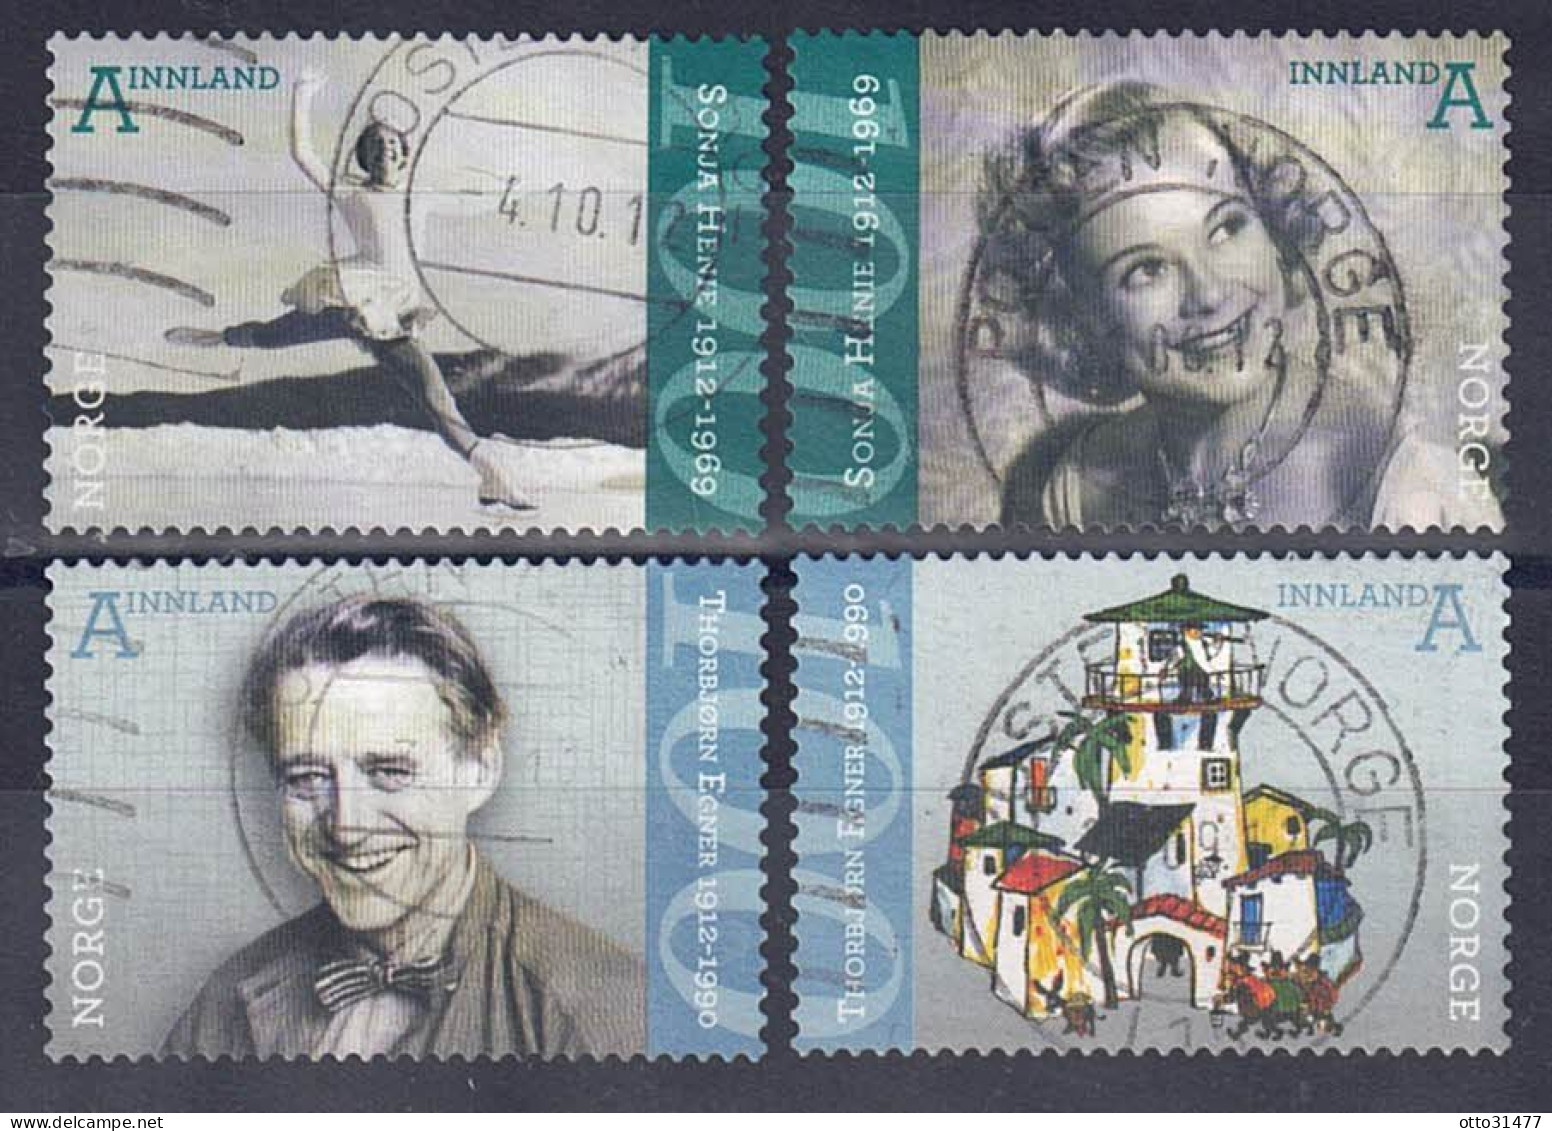 Norwegen 2012 - Geburtstage, Nr. 1778 - 1781, Gestempelt / Used - Used Stamps